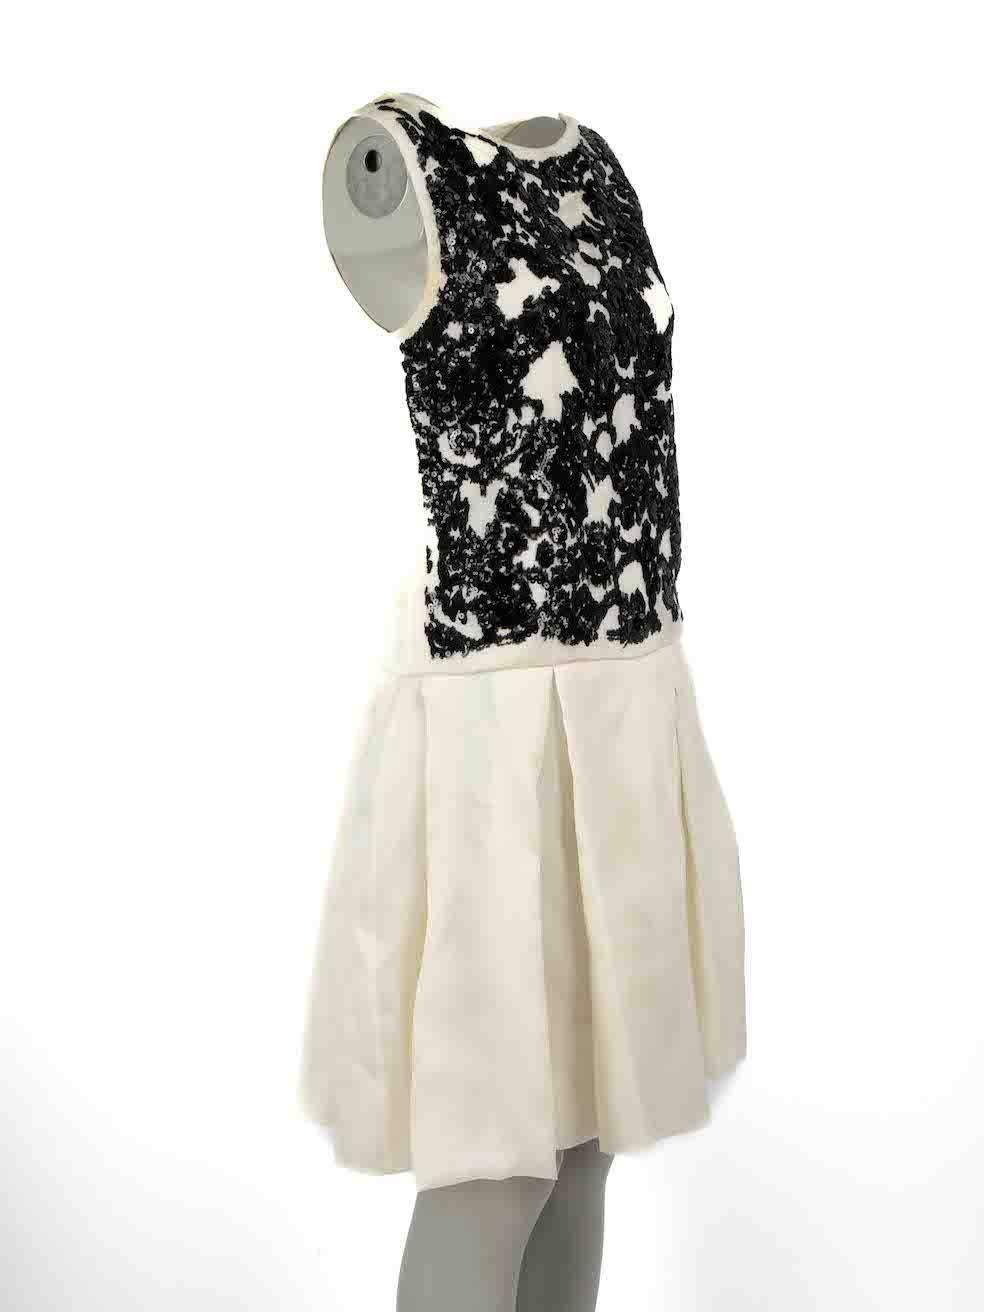 CONDIT ist sehr gut. Minimale Abnutzung des Kleides ist offensichtlich. Minimale Abnutzungserscheinungen an beiden Unterarmen mit verfärbten Flecken auf diesem gebrauchten Christian Dior Designer Wiederverkaufsartikel.
